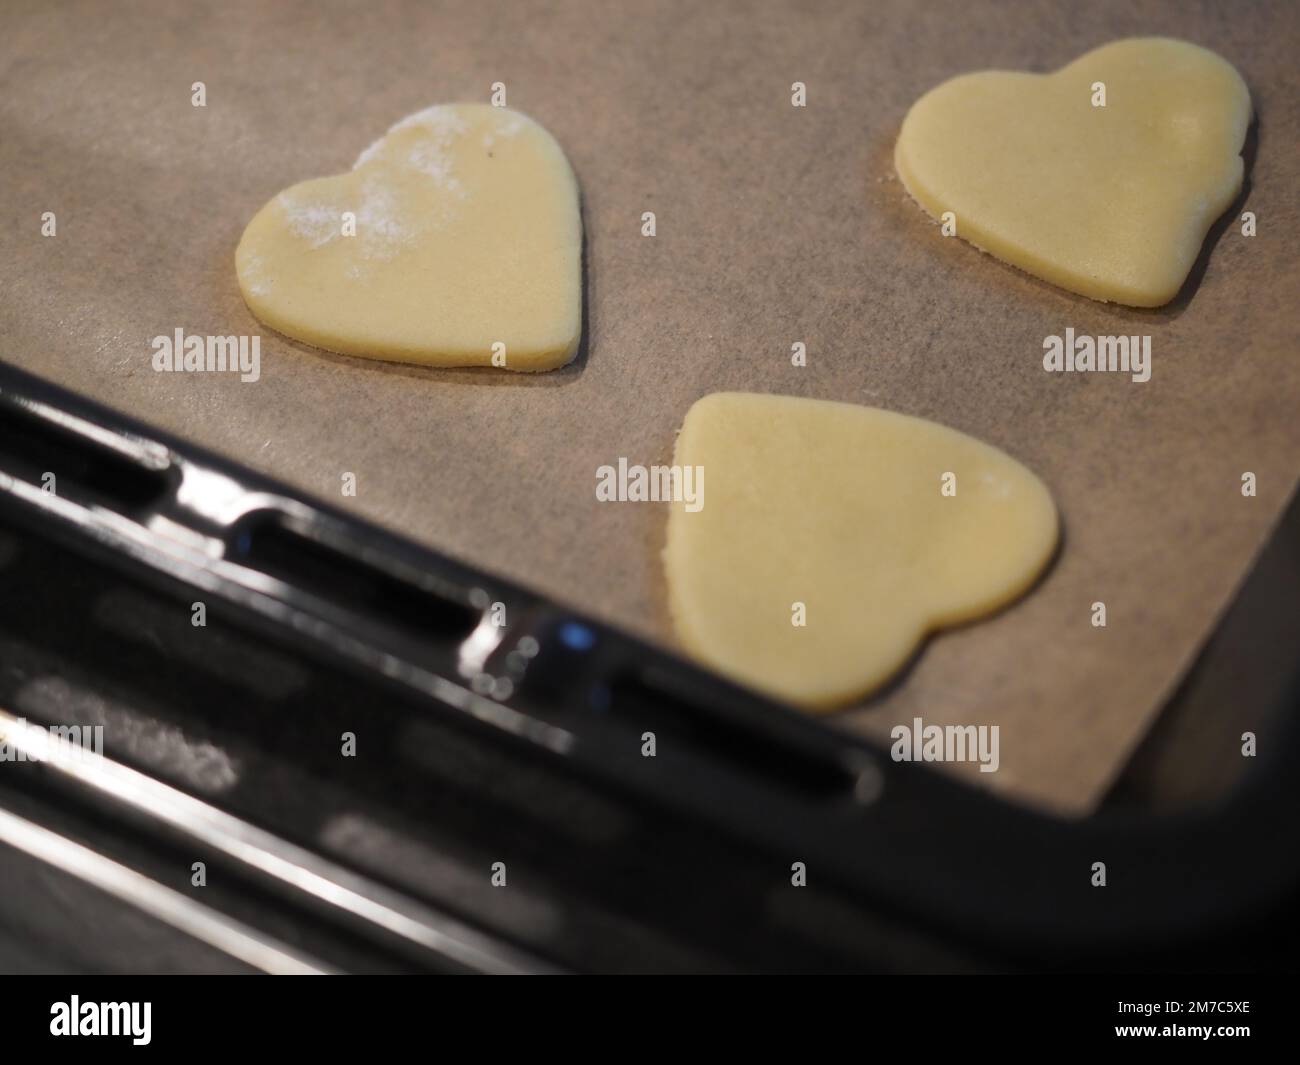 Biscuits faits maison en forme de coeur sur une plaque de cuisson Banque D'Images